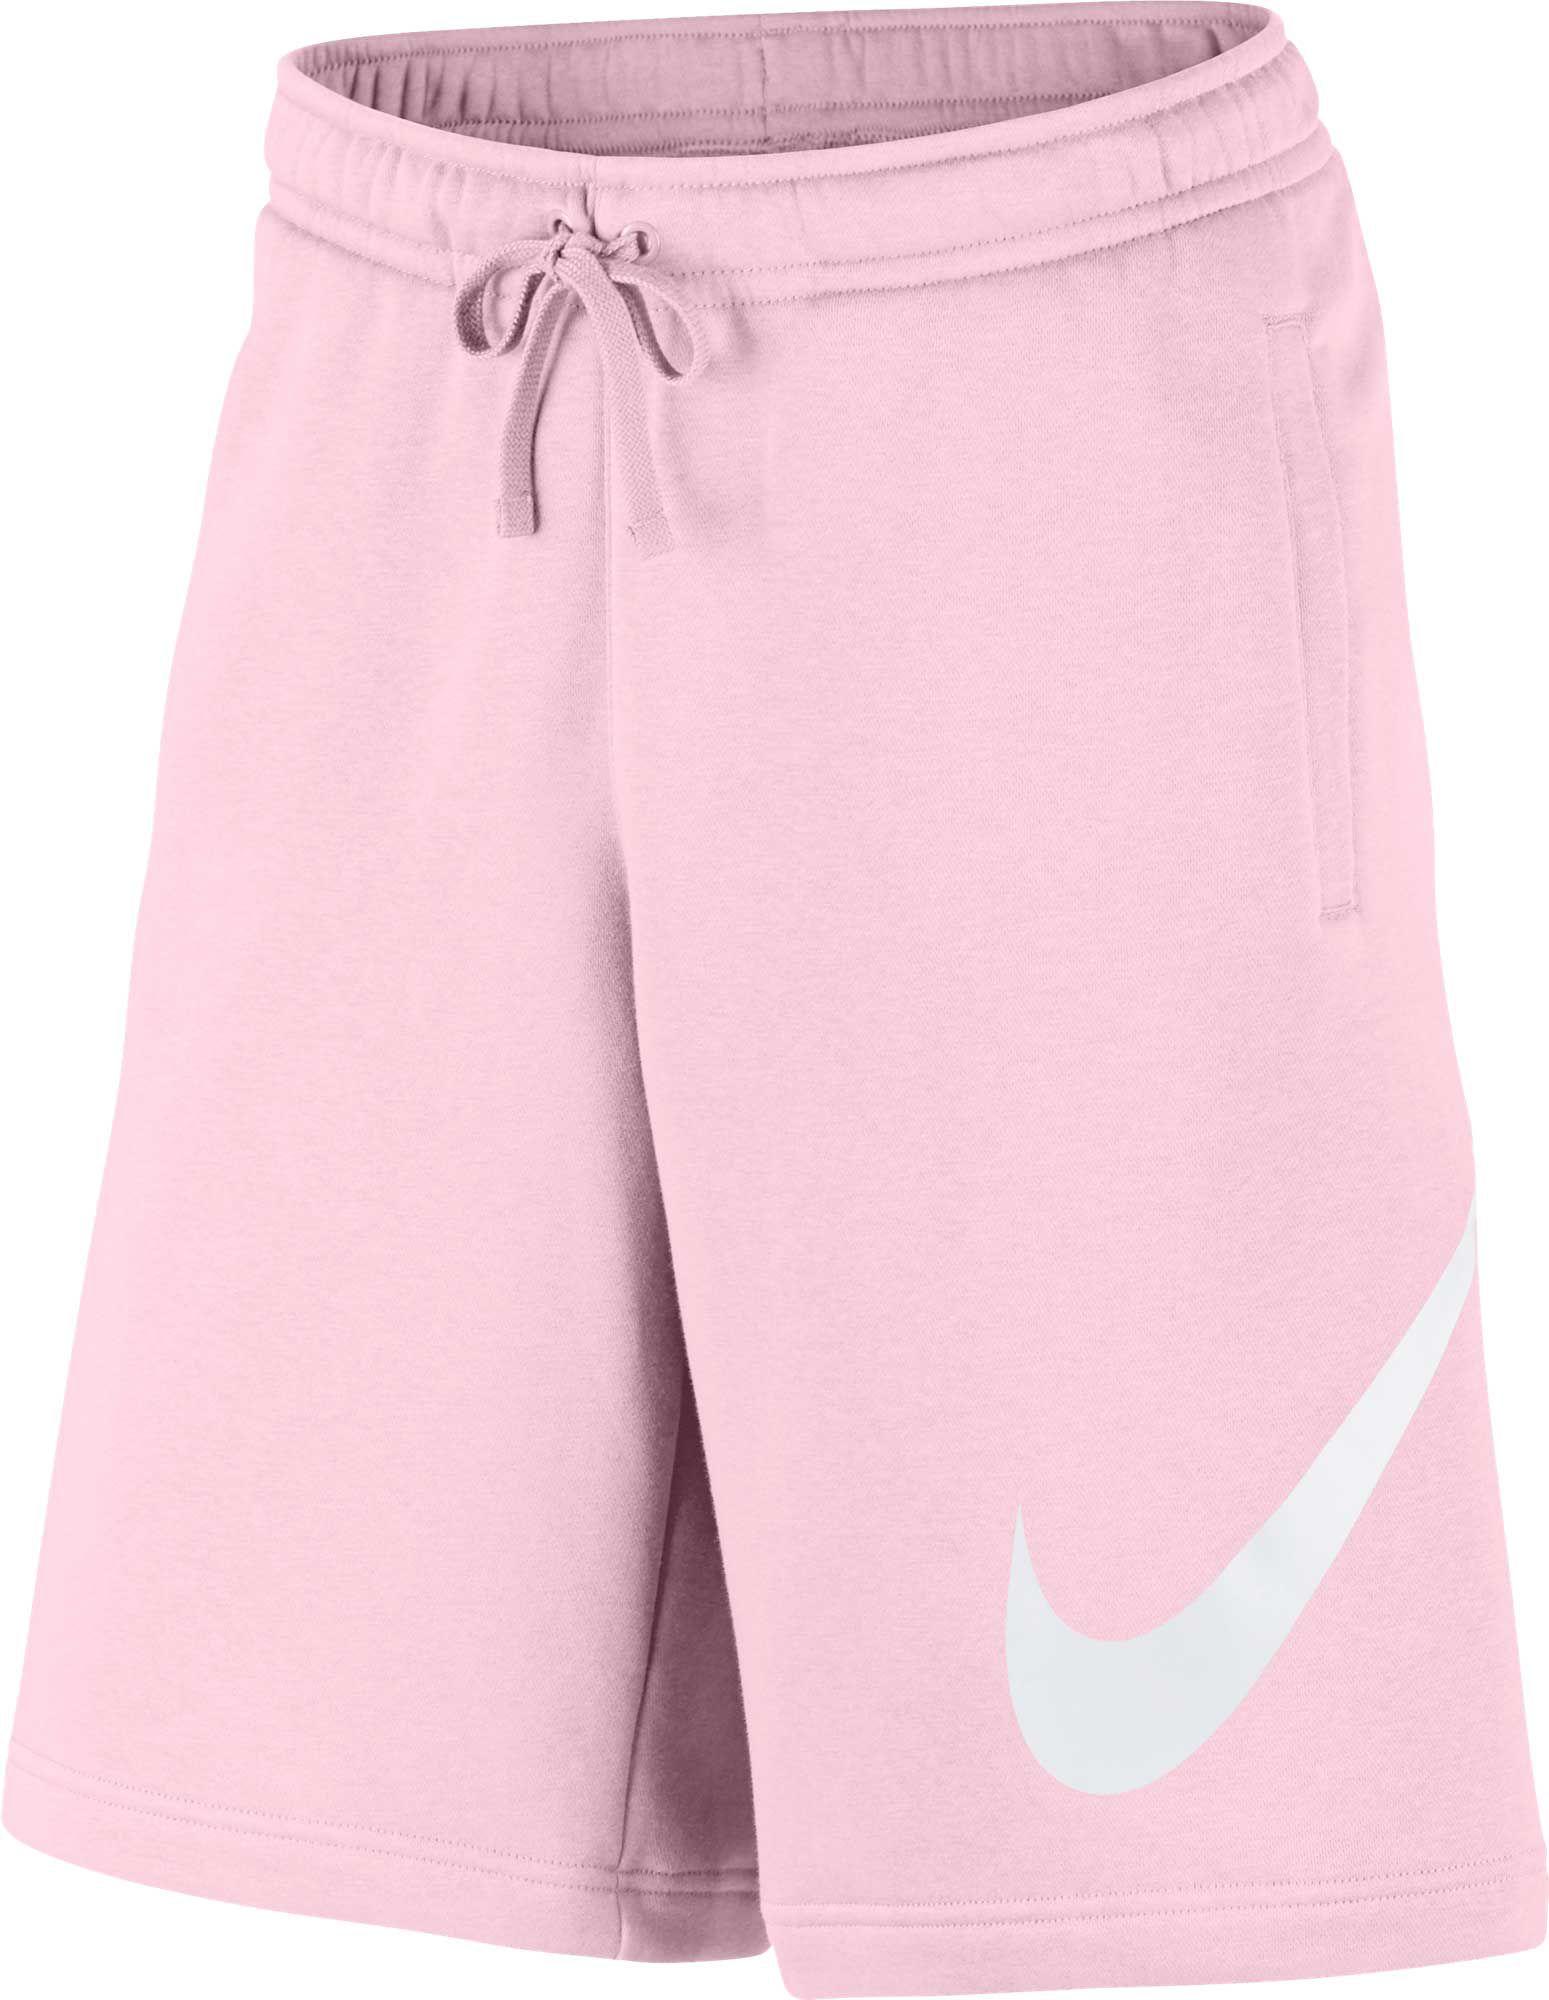 Nike Sportswear Club Fleece Sweatshorts in Pink for Men - Lyst